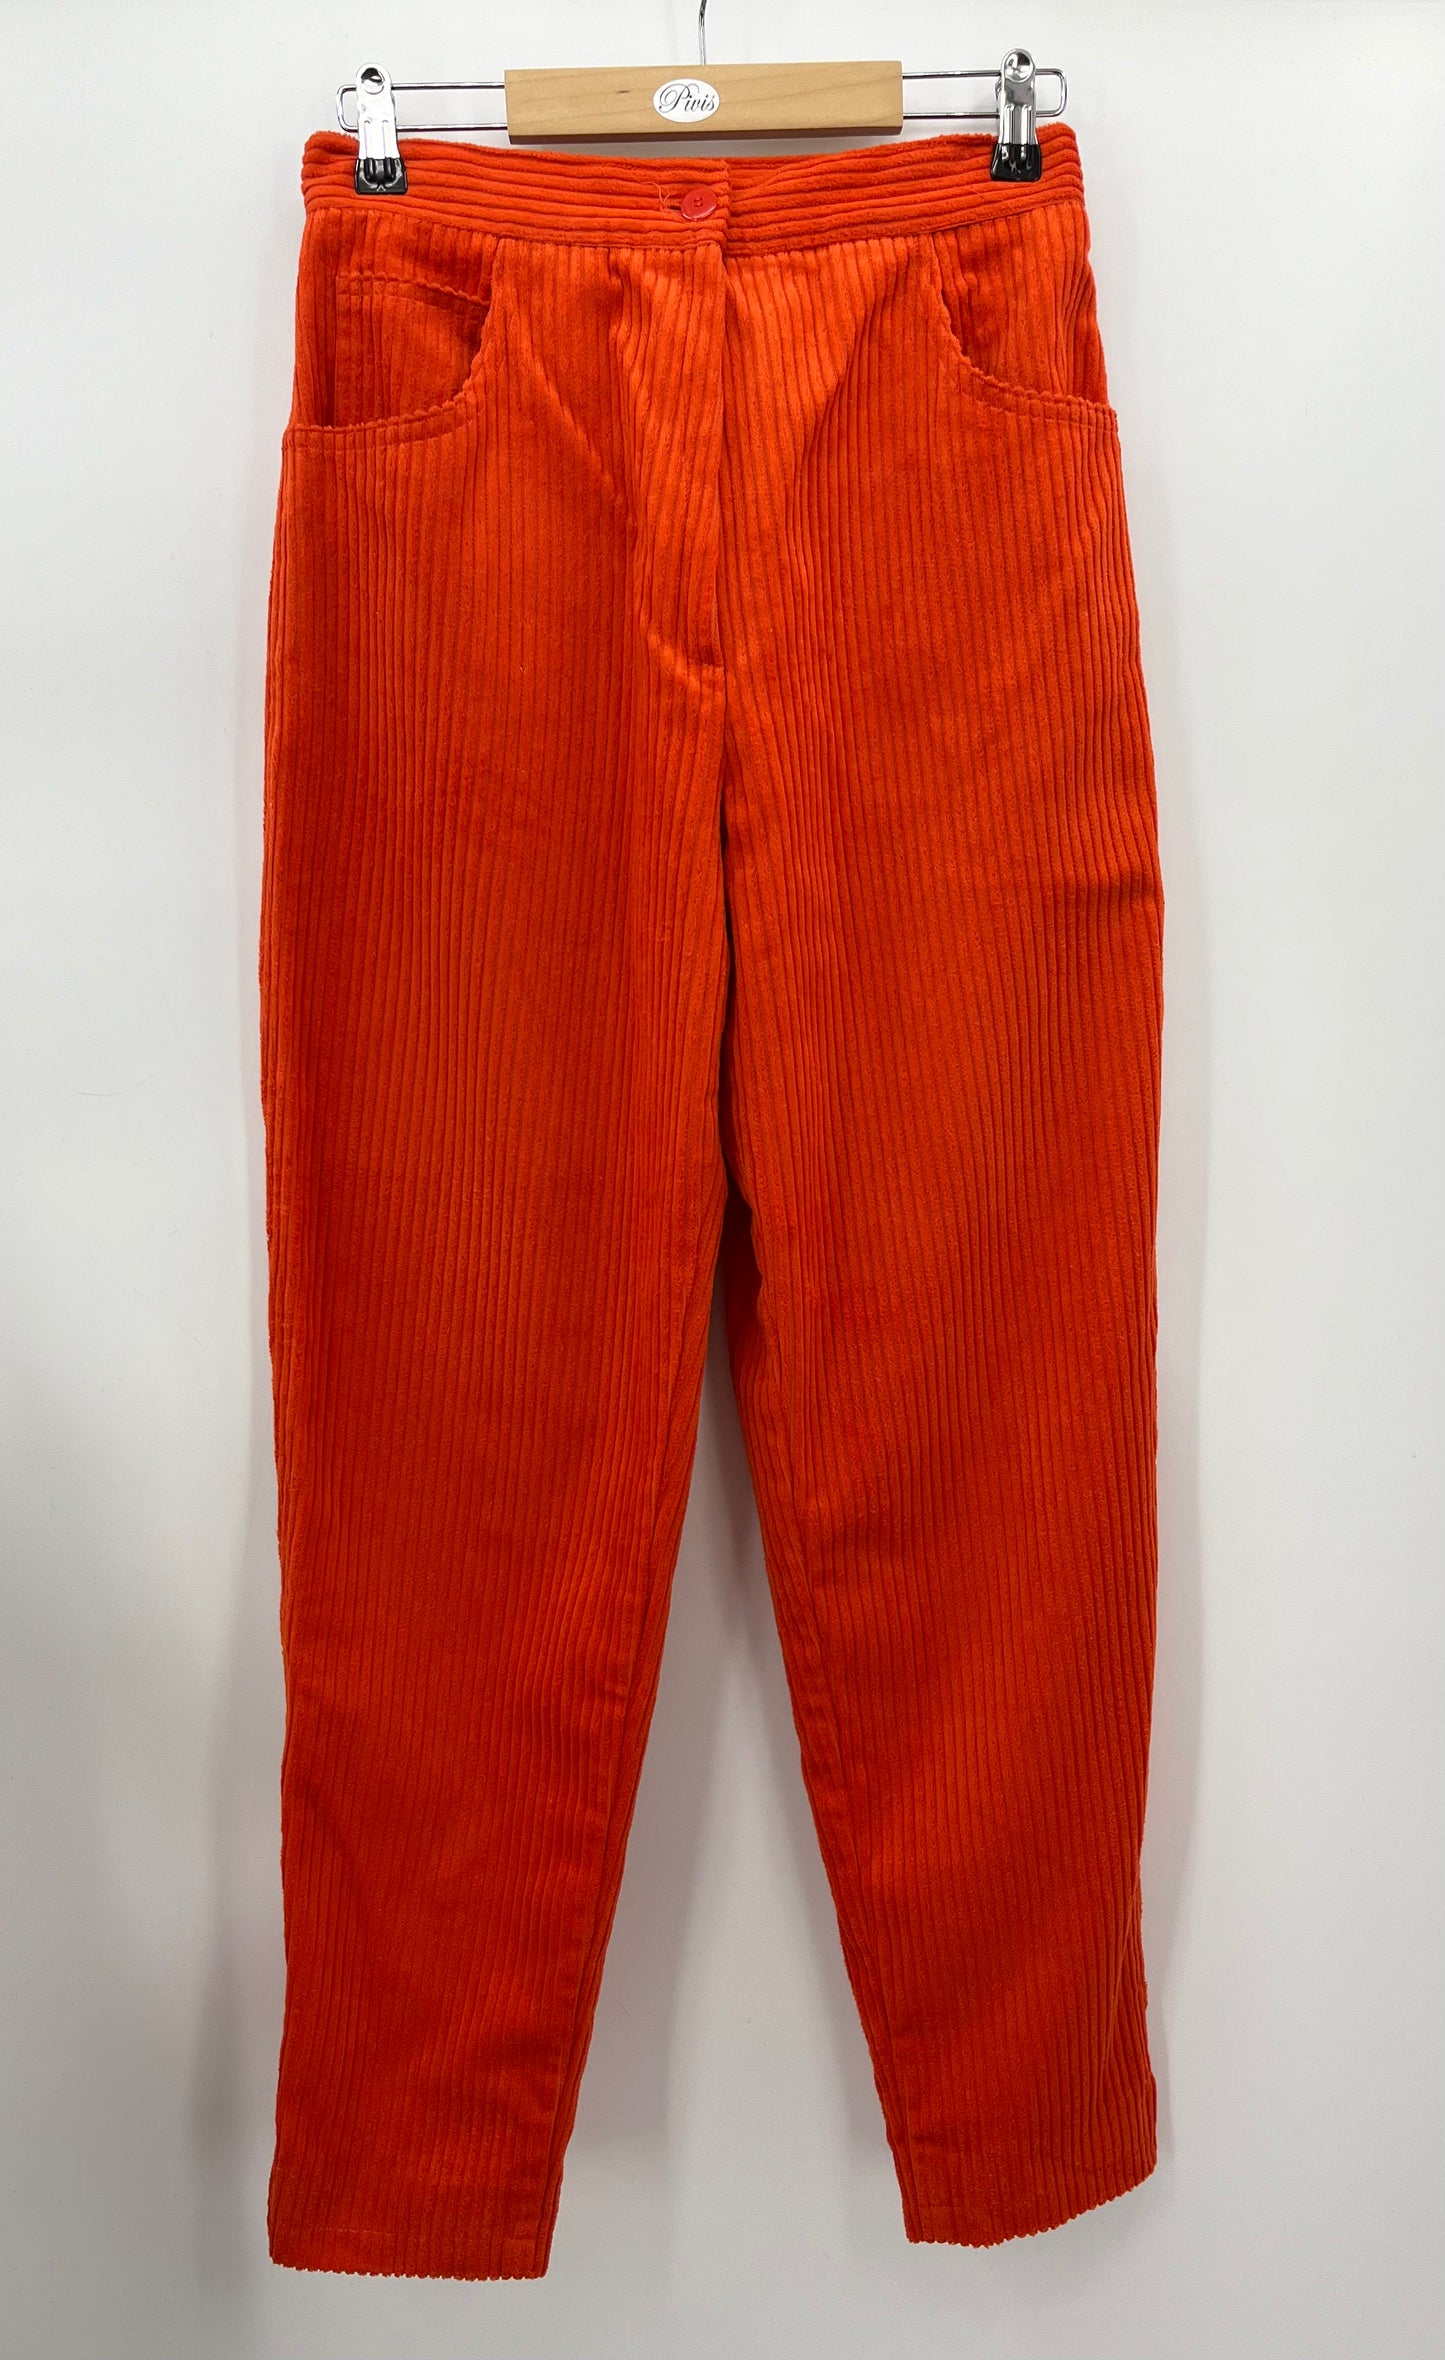 Oranssit vakosamettihousut, 90-luku, vyöt.ymp. 72cm, koko 36